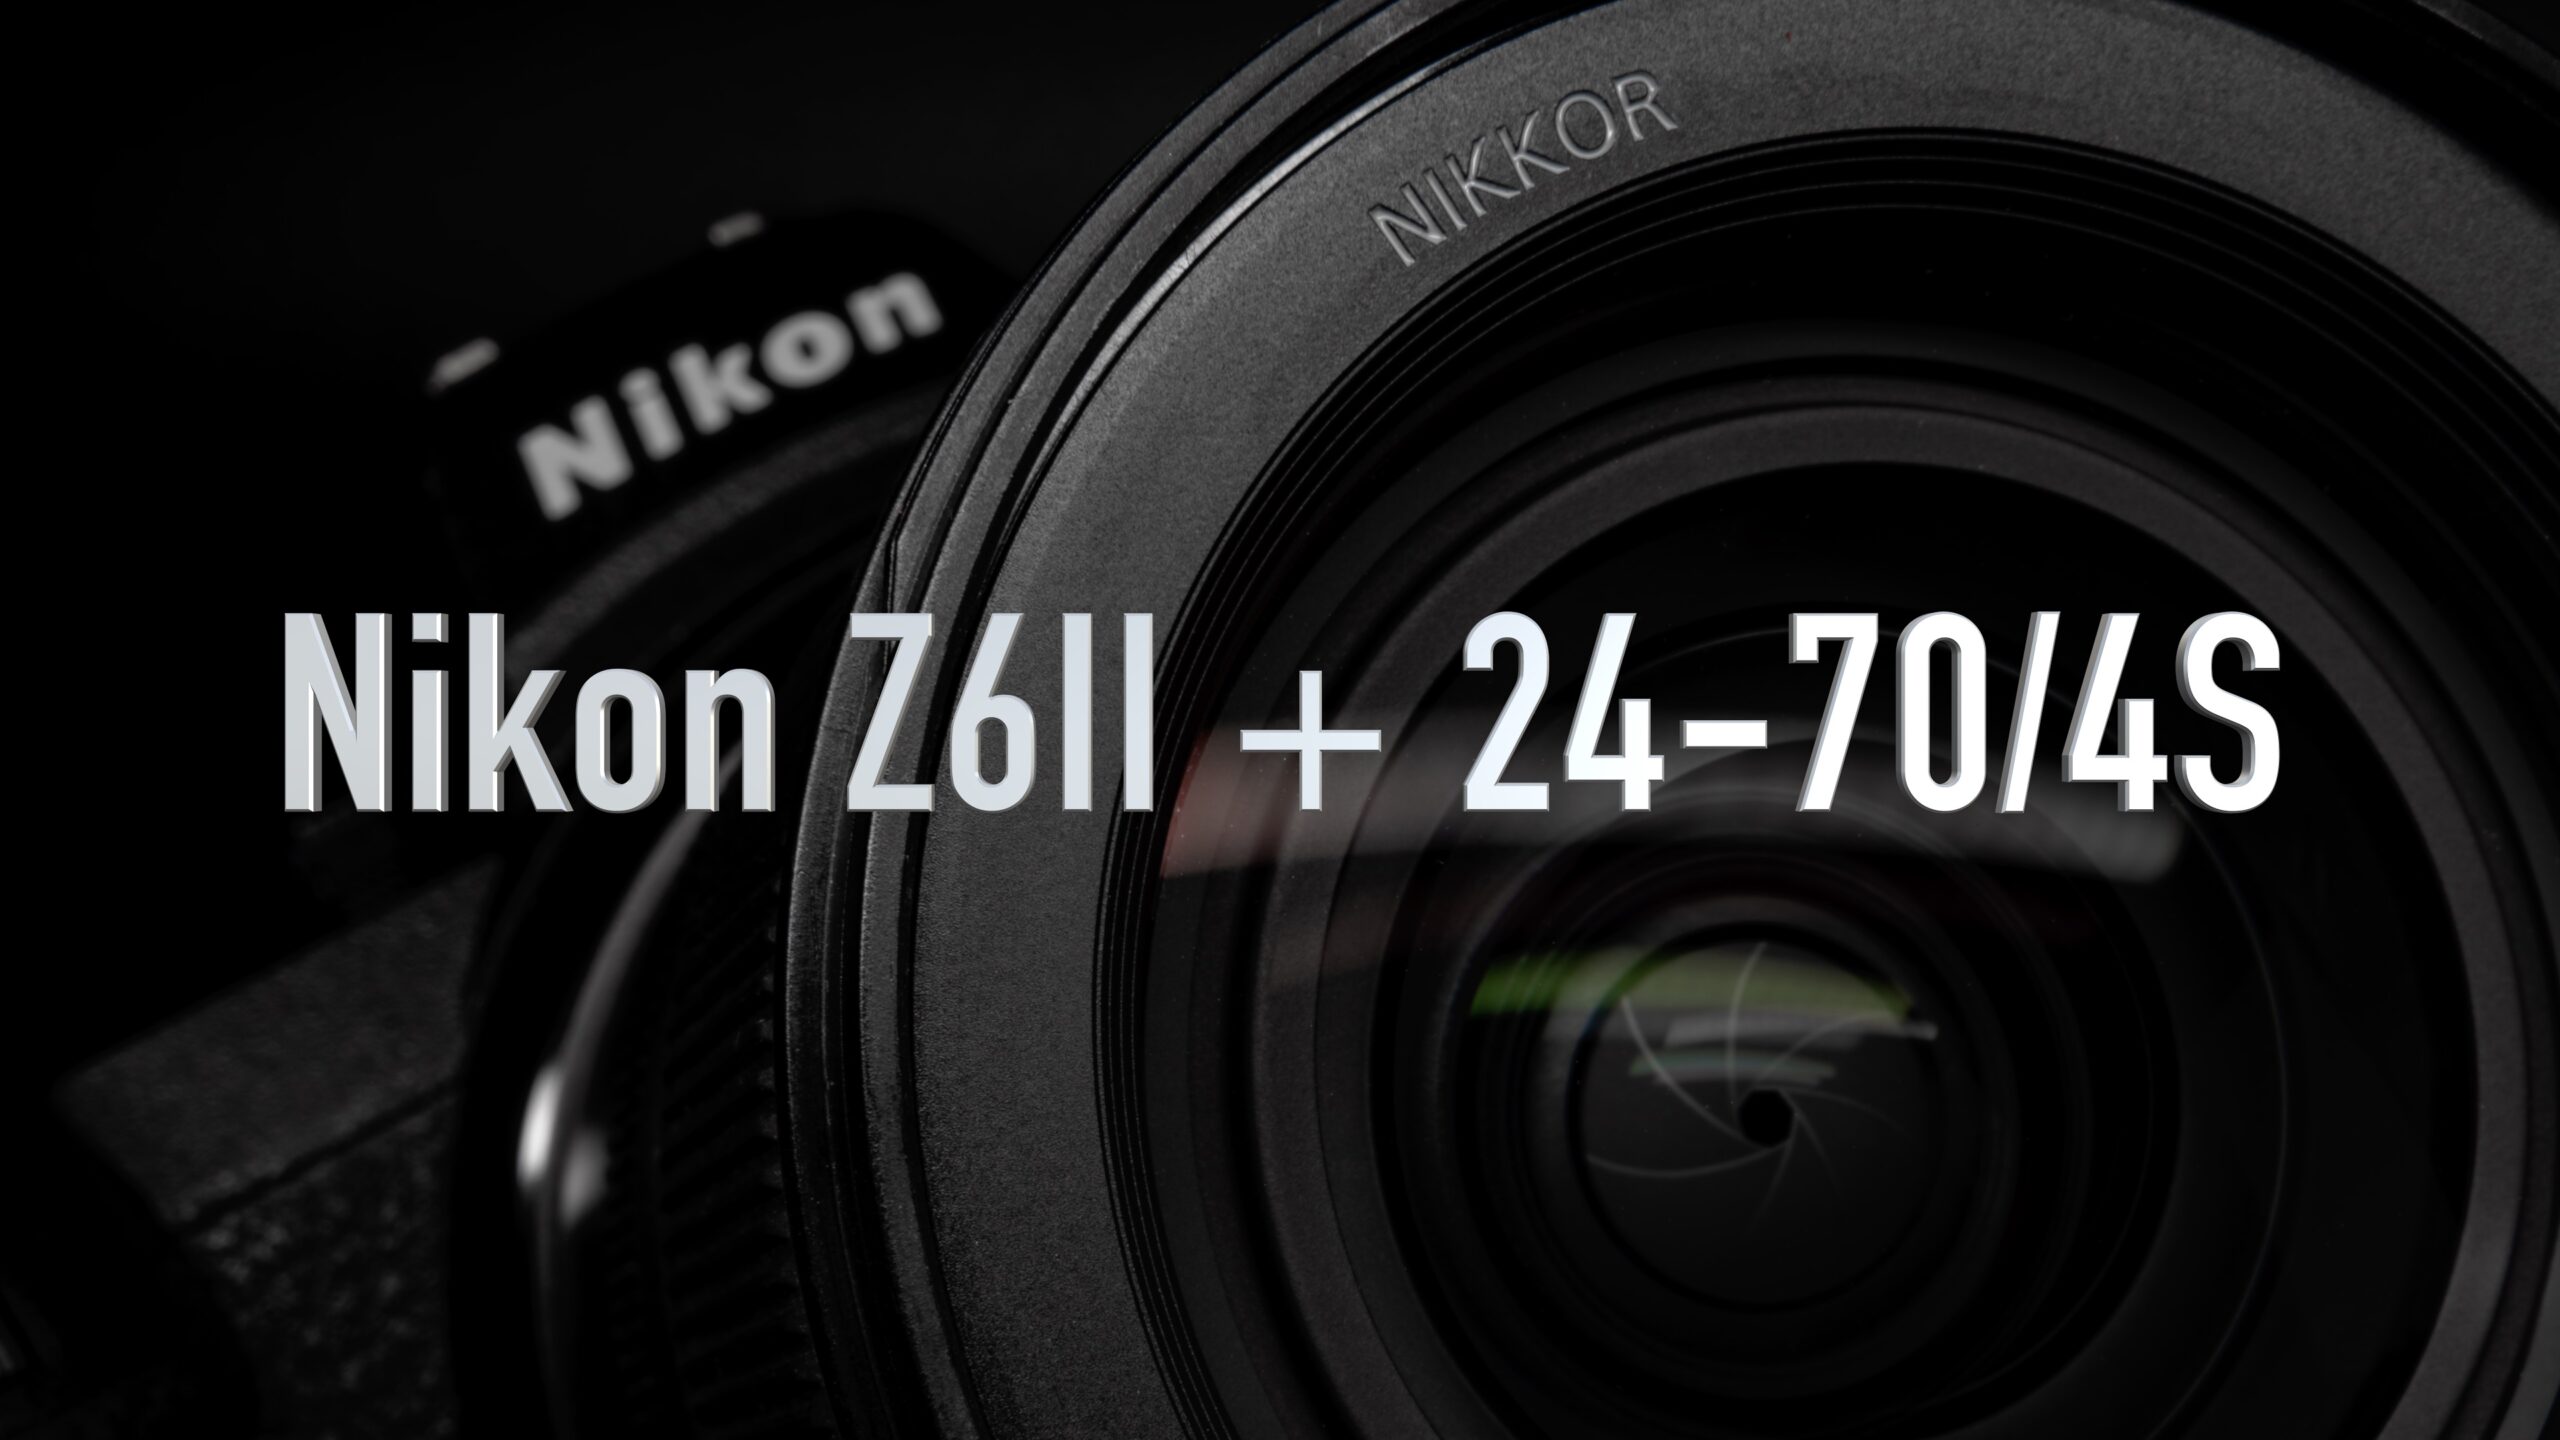 Nikon Z6II + Nikkor 24-70/4S